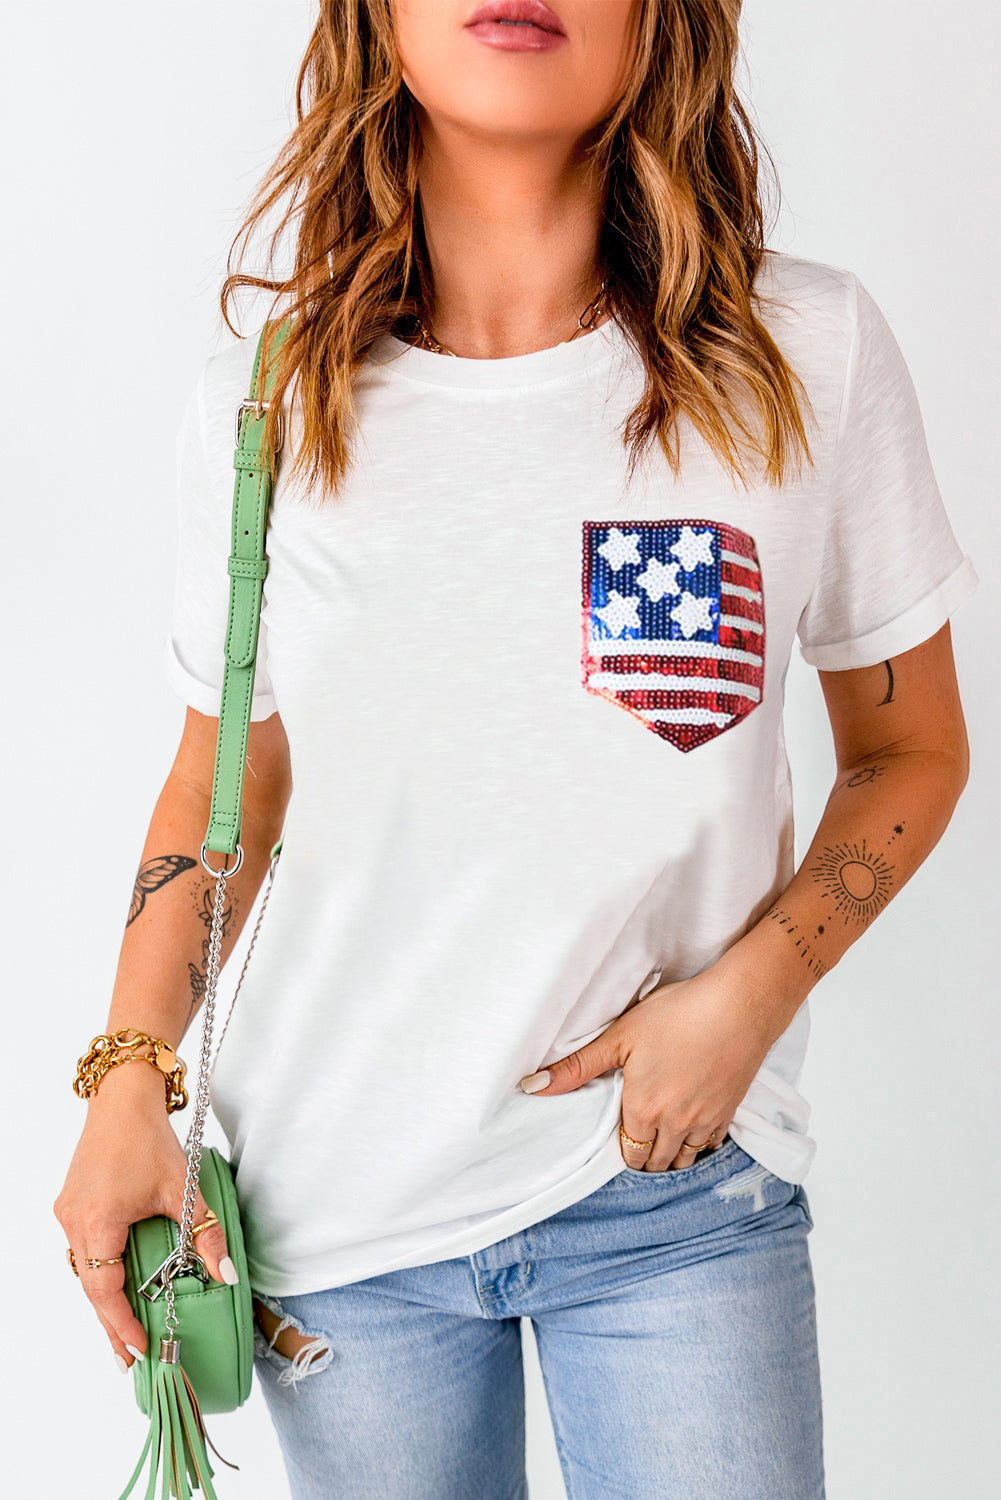 Camiseta blanca con parche y bolsillo con gráfico de lentejuelas y bandera estadounidense